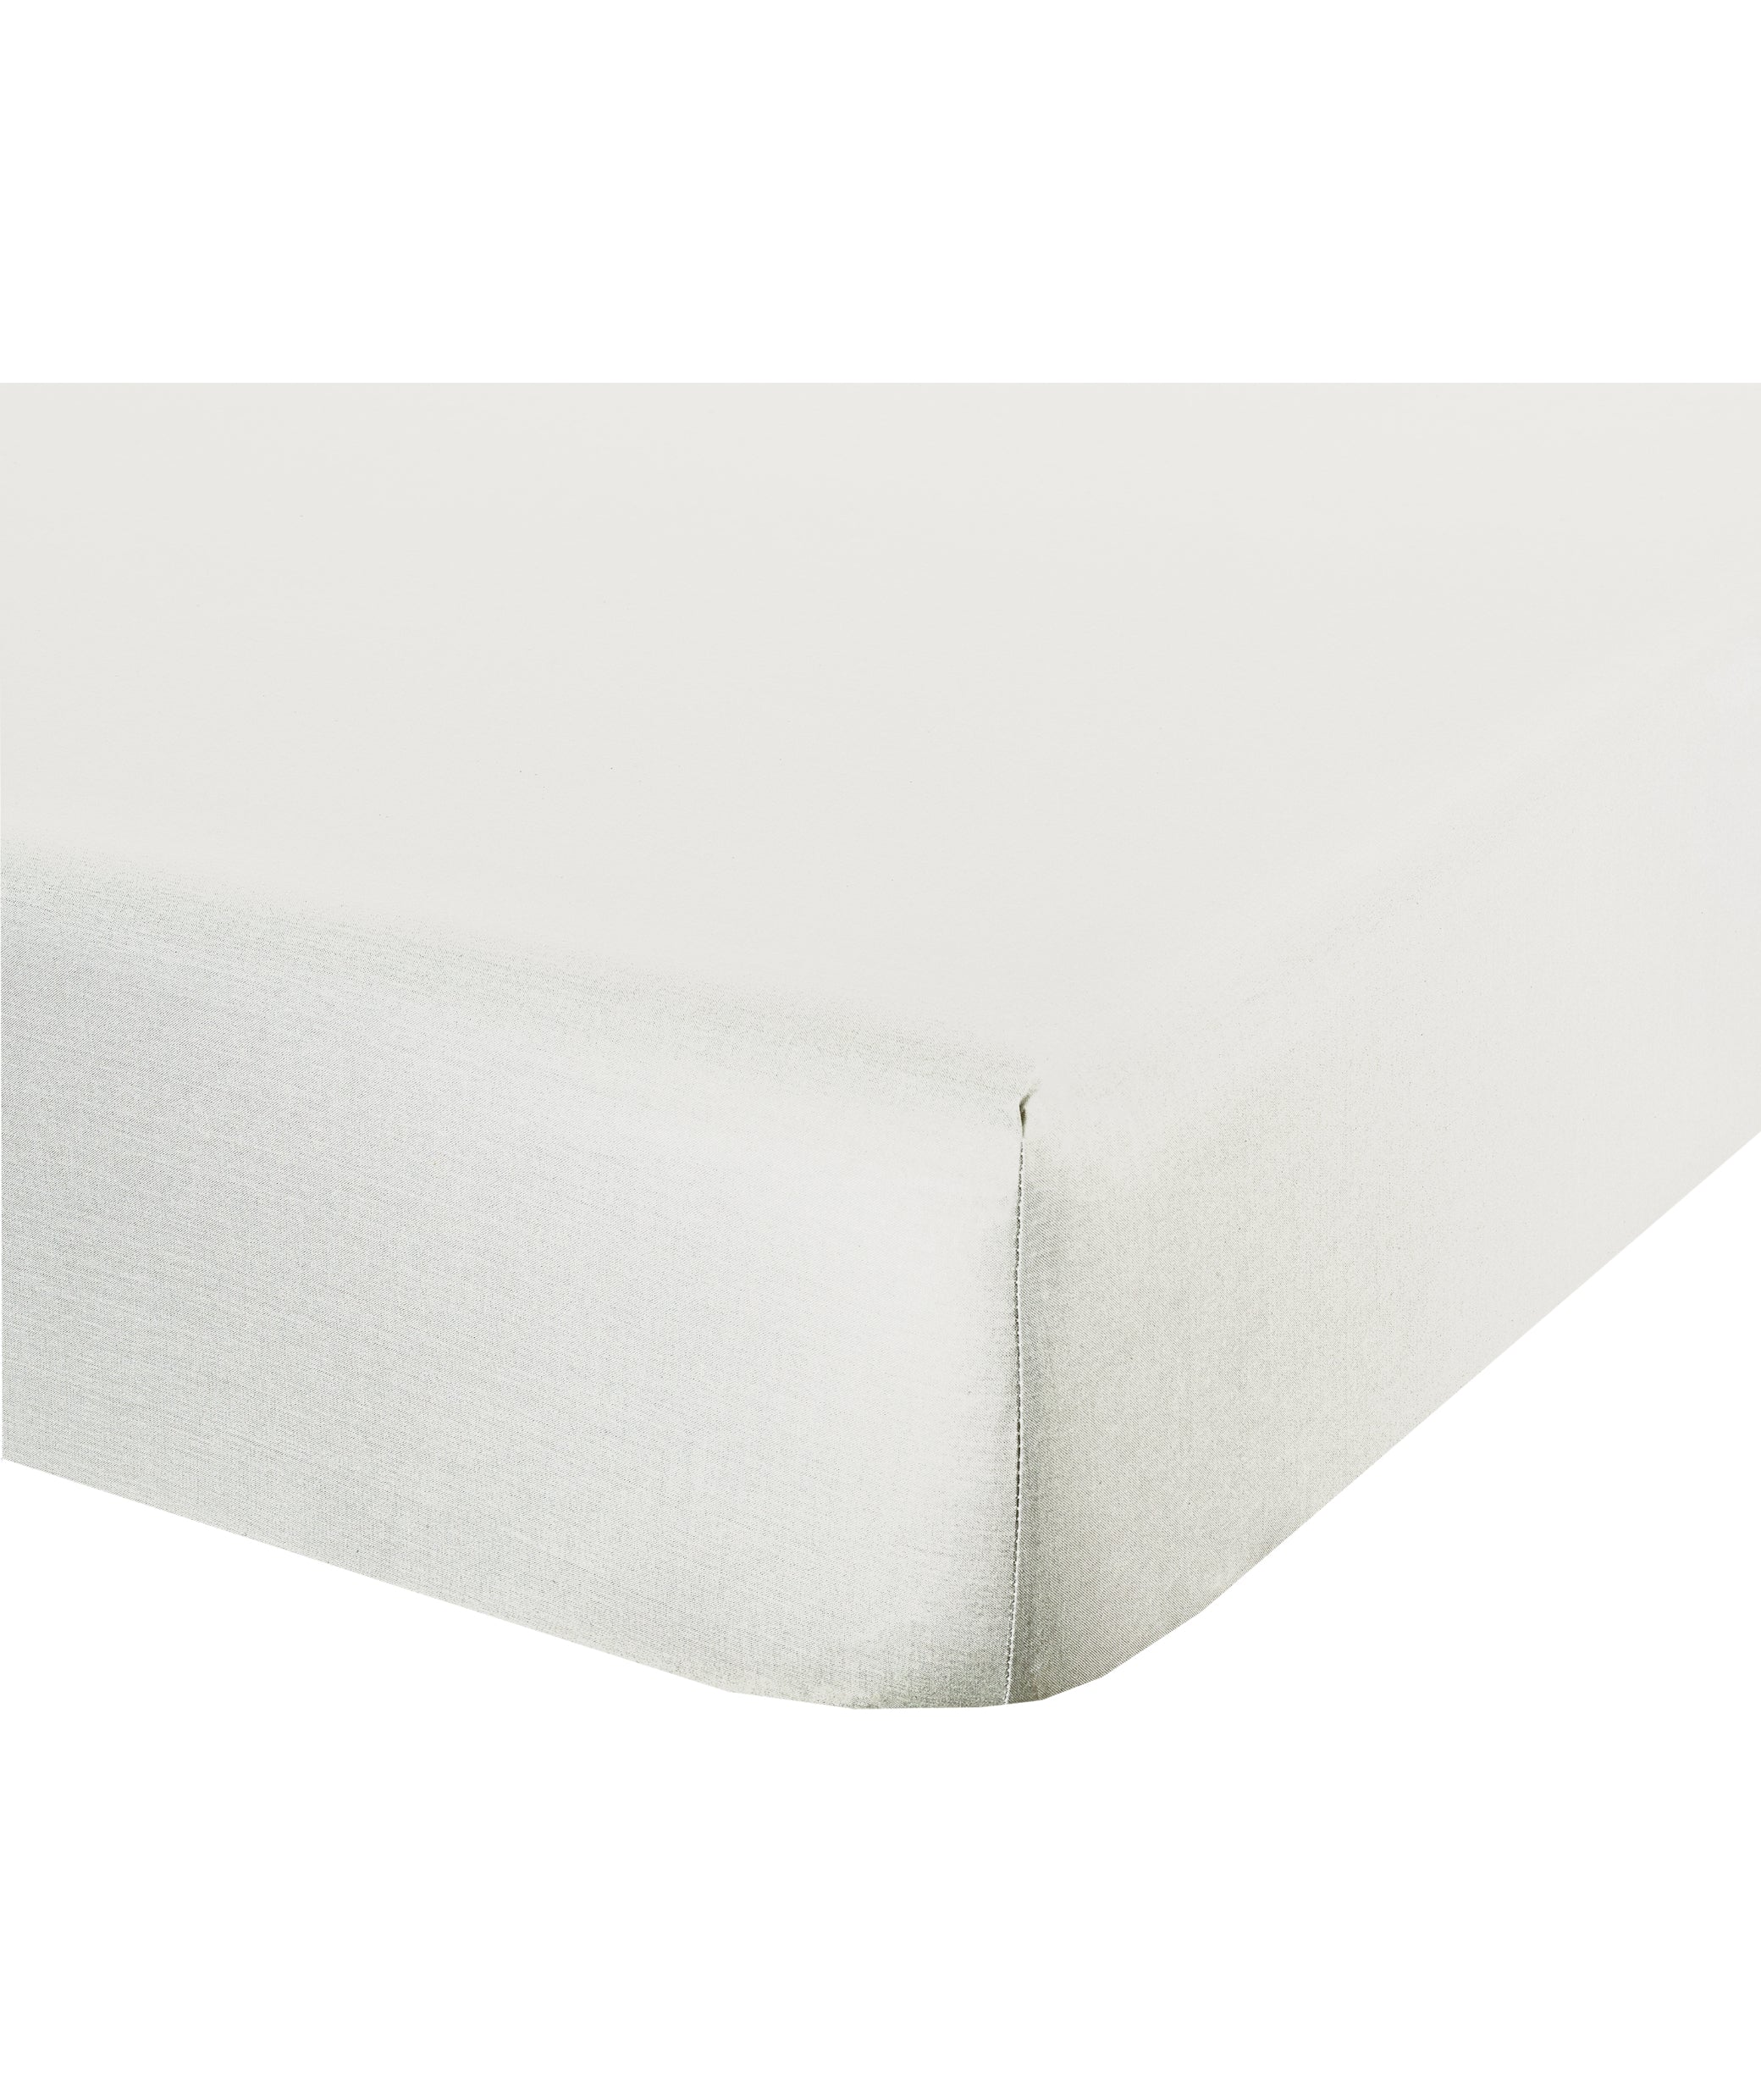 Completo letto lenzuola federe bifaccia double face stampa digitale in cotone made in italy FELCI MULTICOLOR